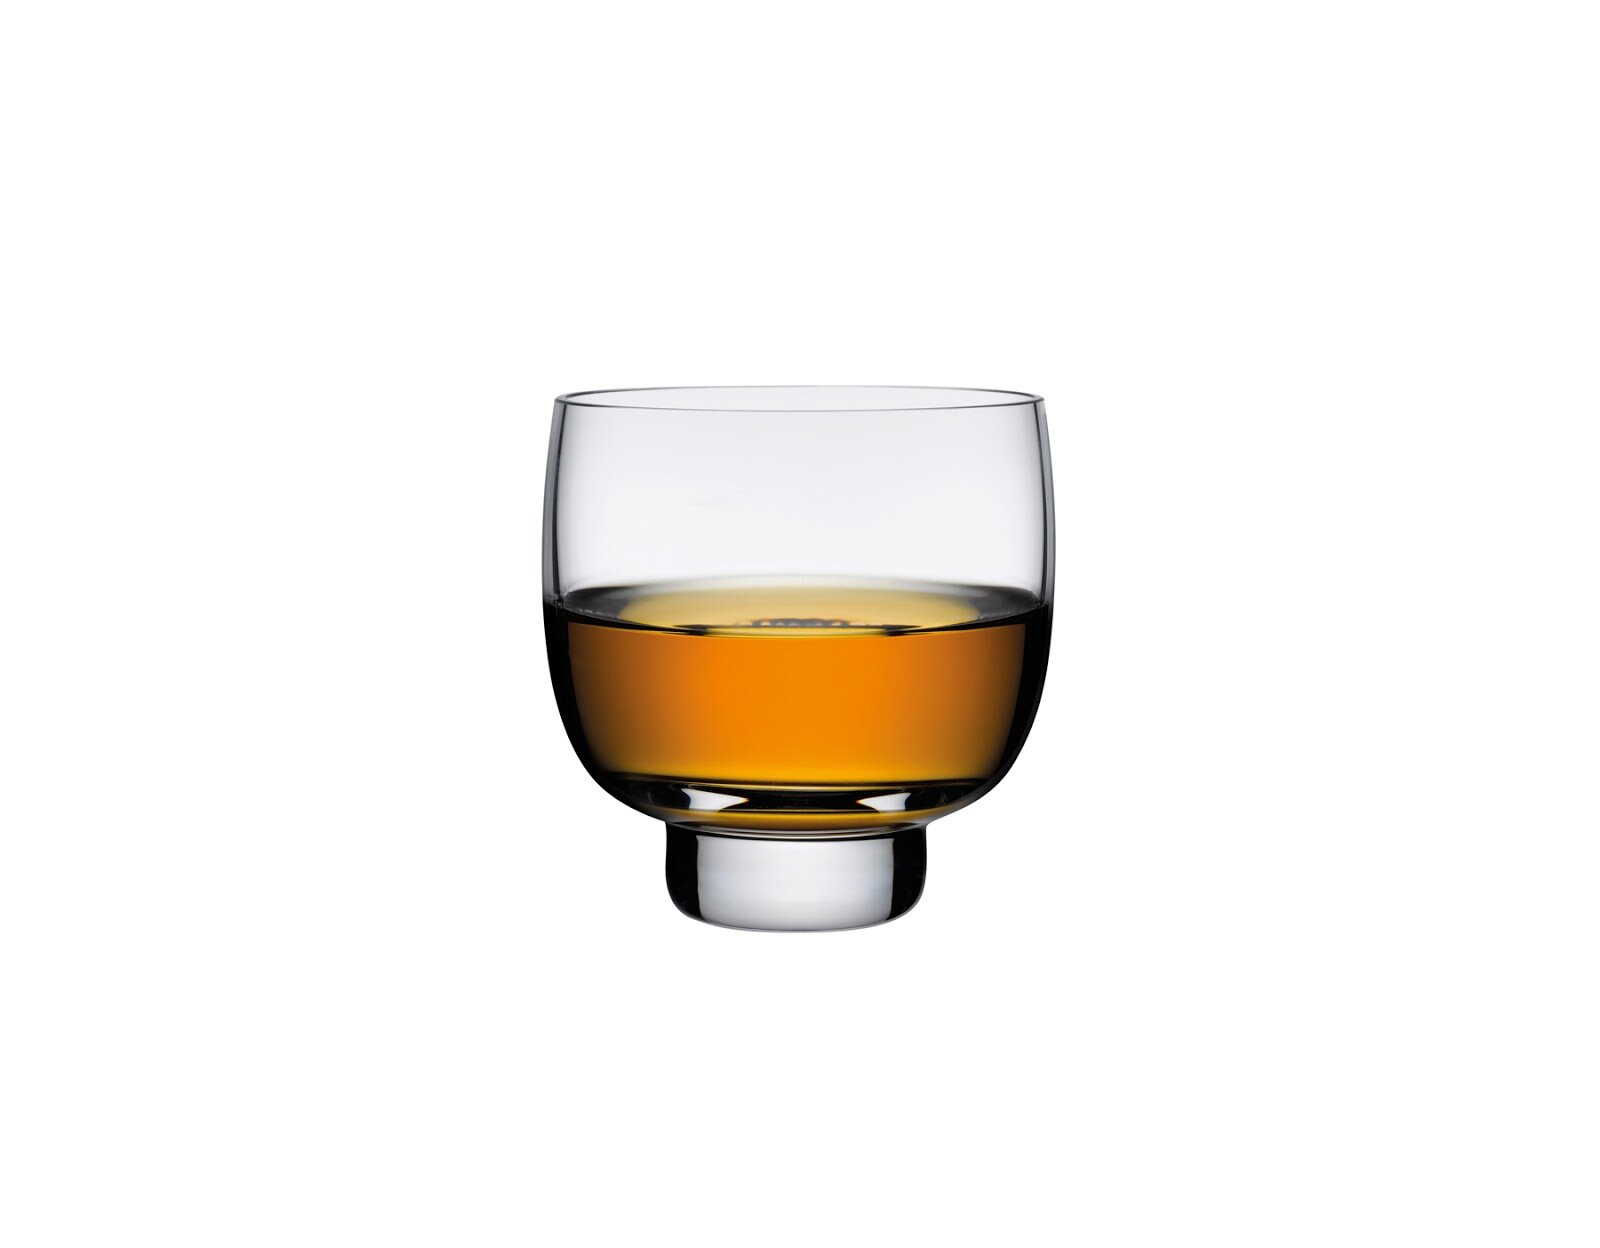 https://assets.wfcdn.com/im/02858394/compr-r85/8946/89464393/malt-set-of-2-lead-free-crystal-whisky-glasses-9-oz.jpg